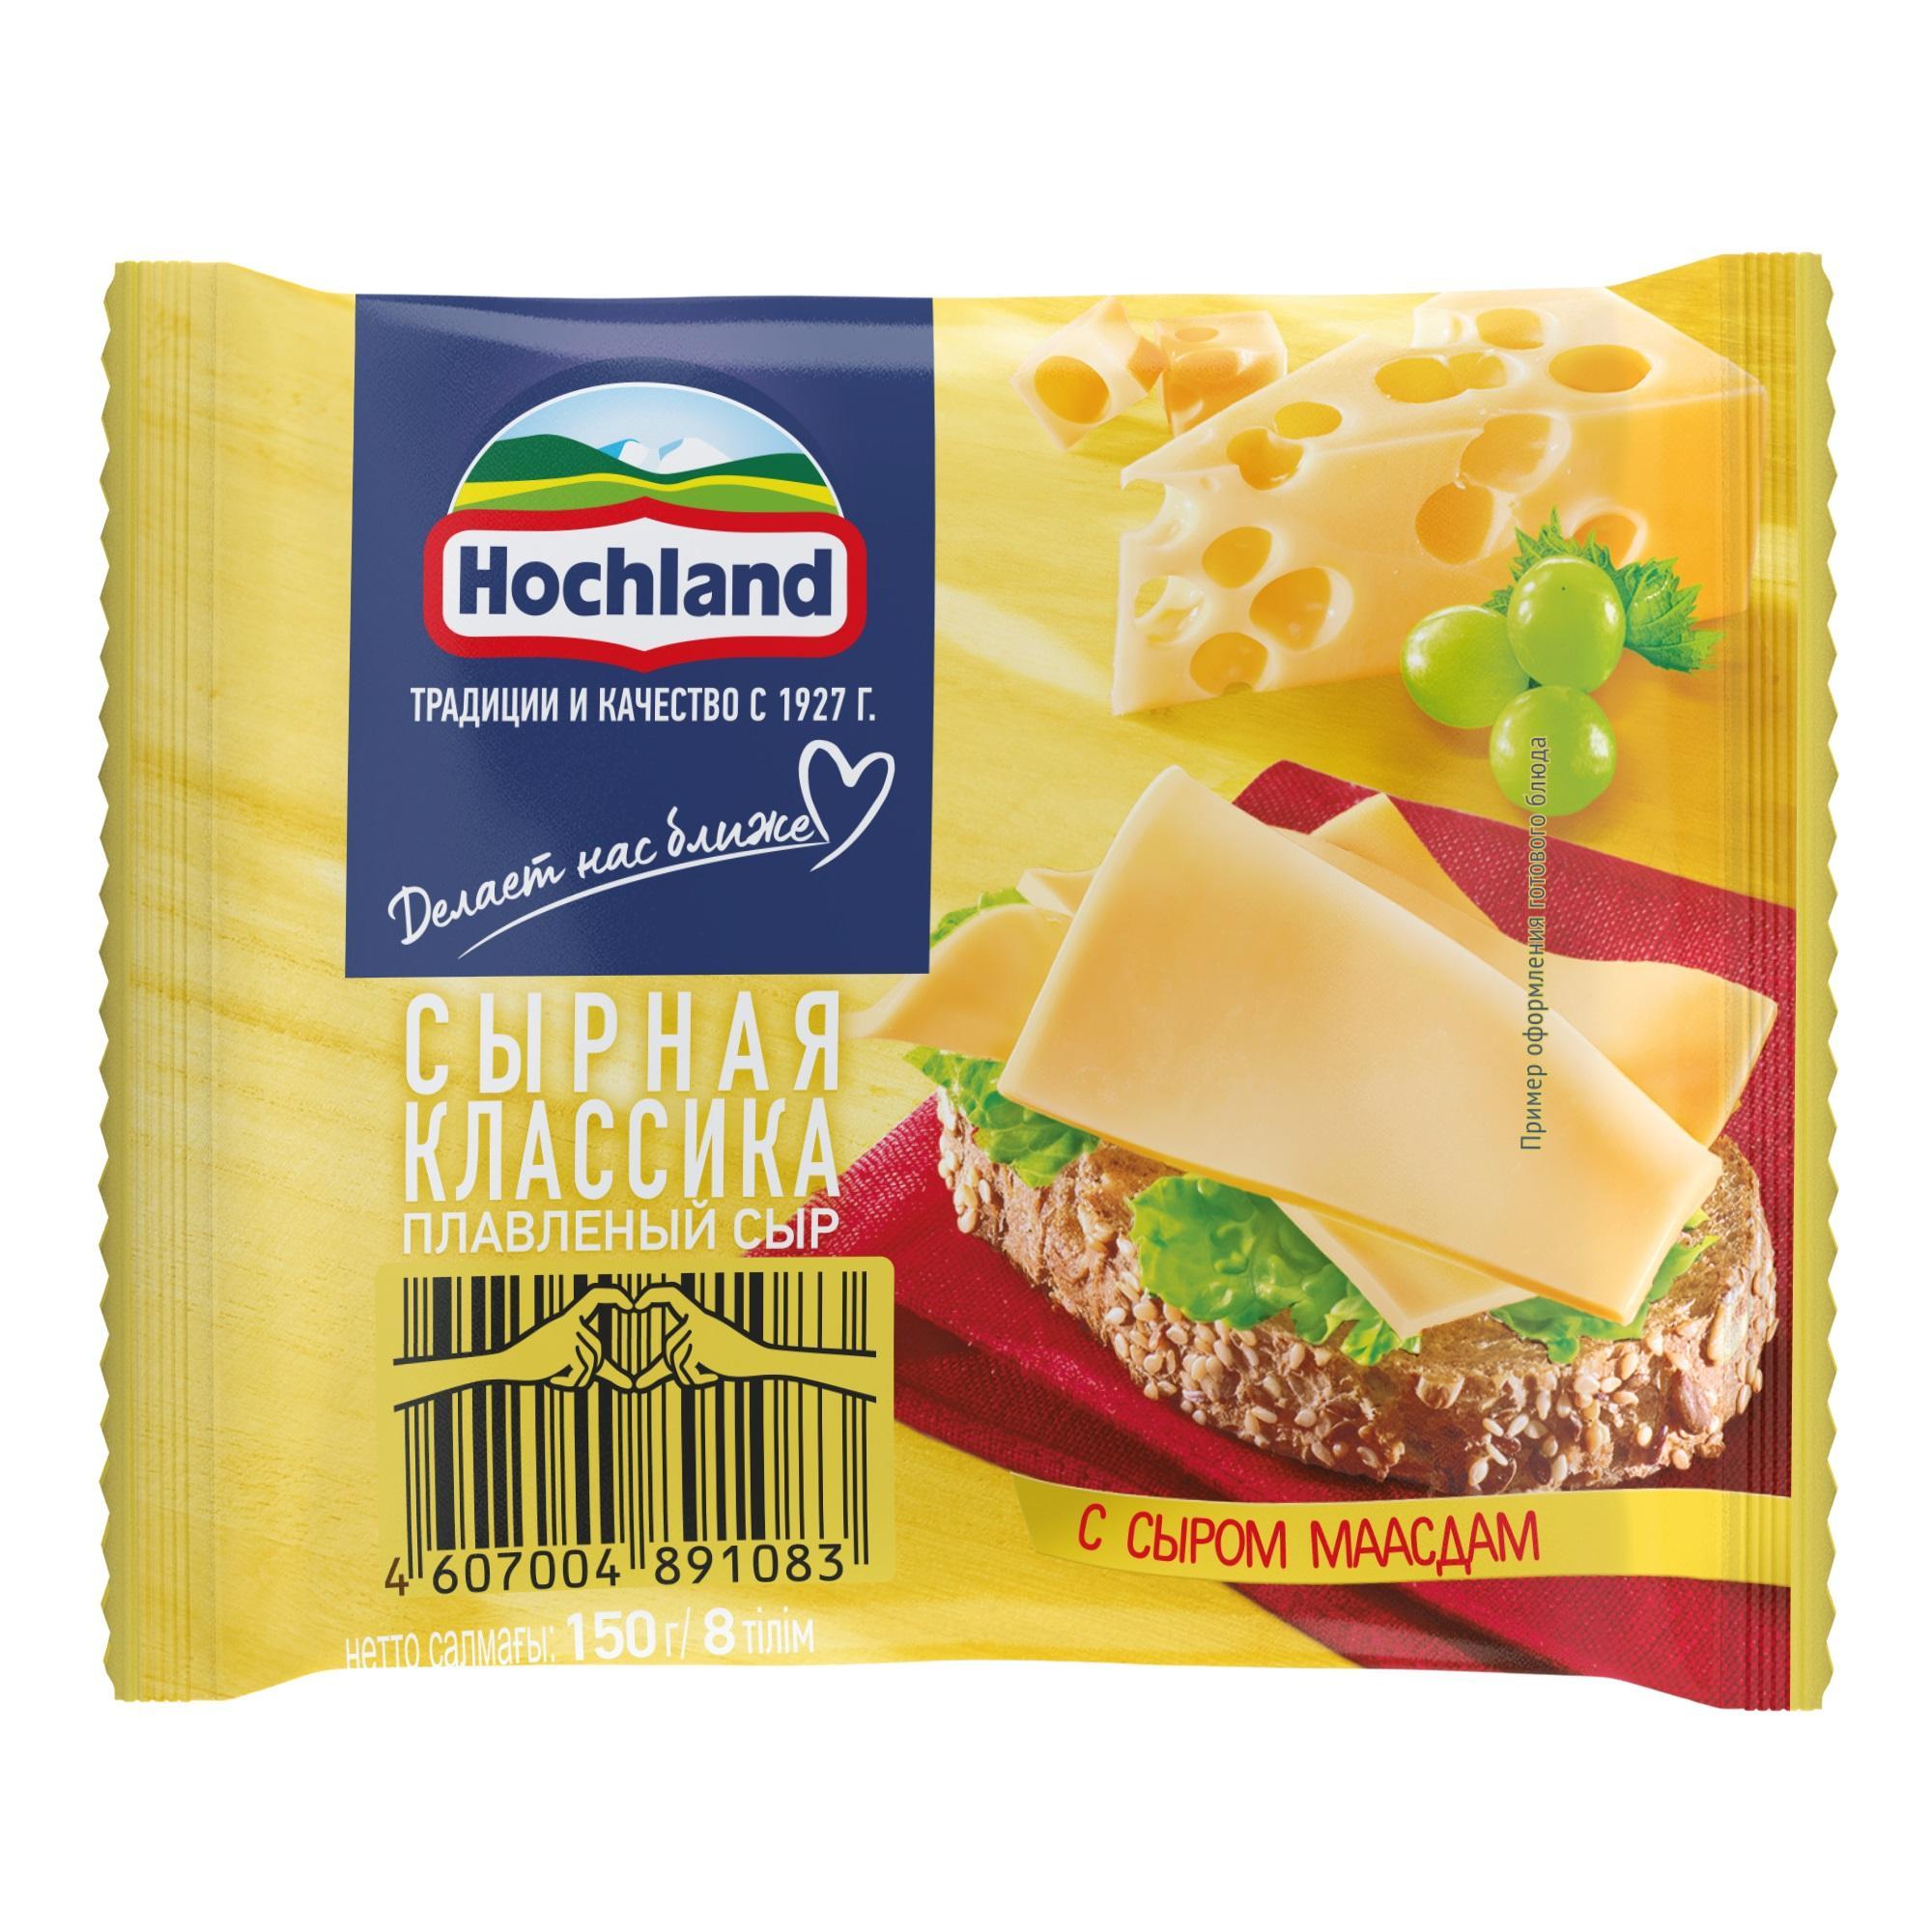 Сыр плавленый Hochland Сырная классика с сыром Маасдам 45%, ломтики, 150 гр., флоу-пак